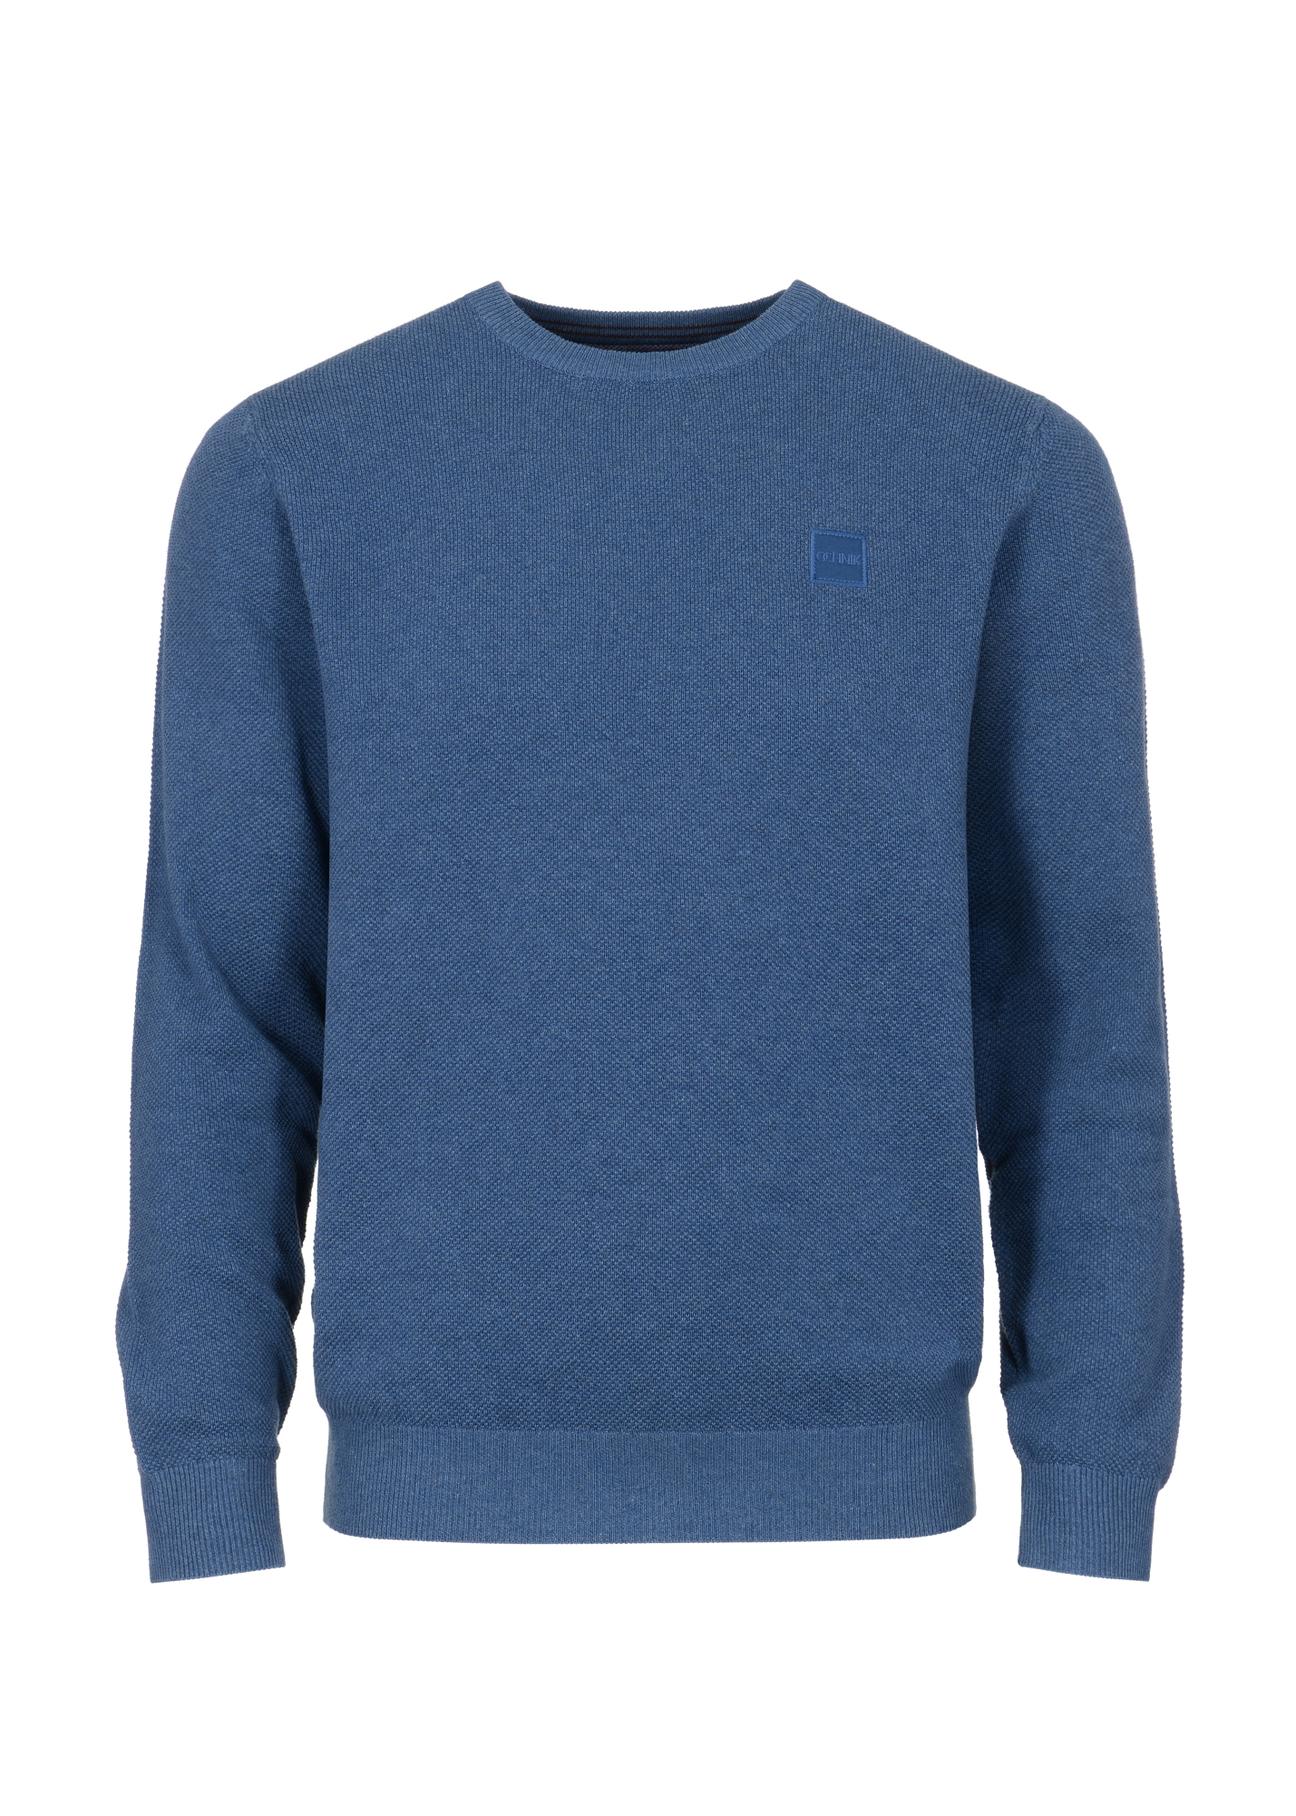 Niebieski bawełniany sweter męski z logo SWEMT-0135-60(Z23)